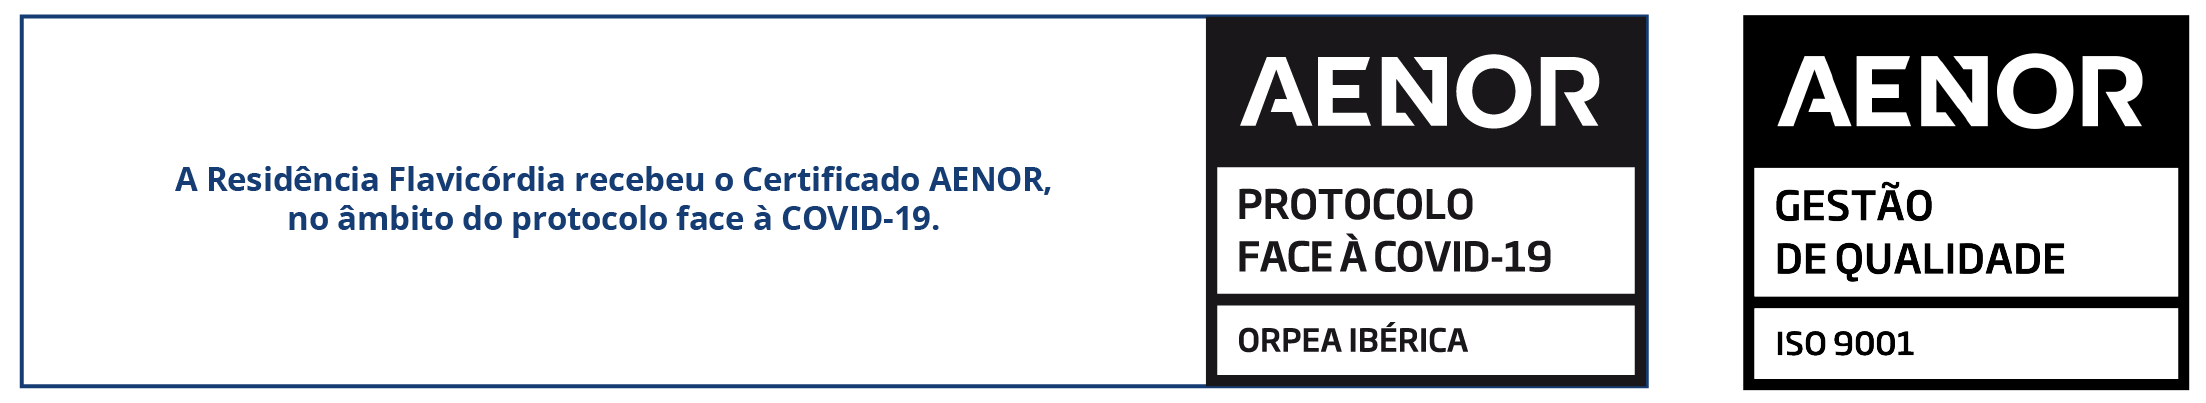 Protocolos AENOR